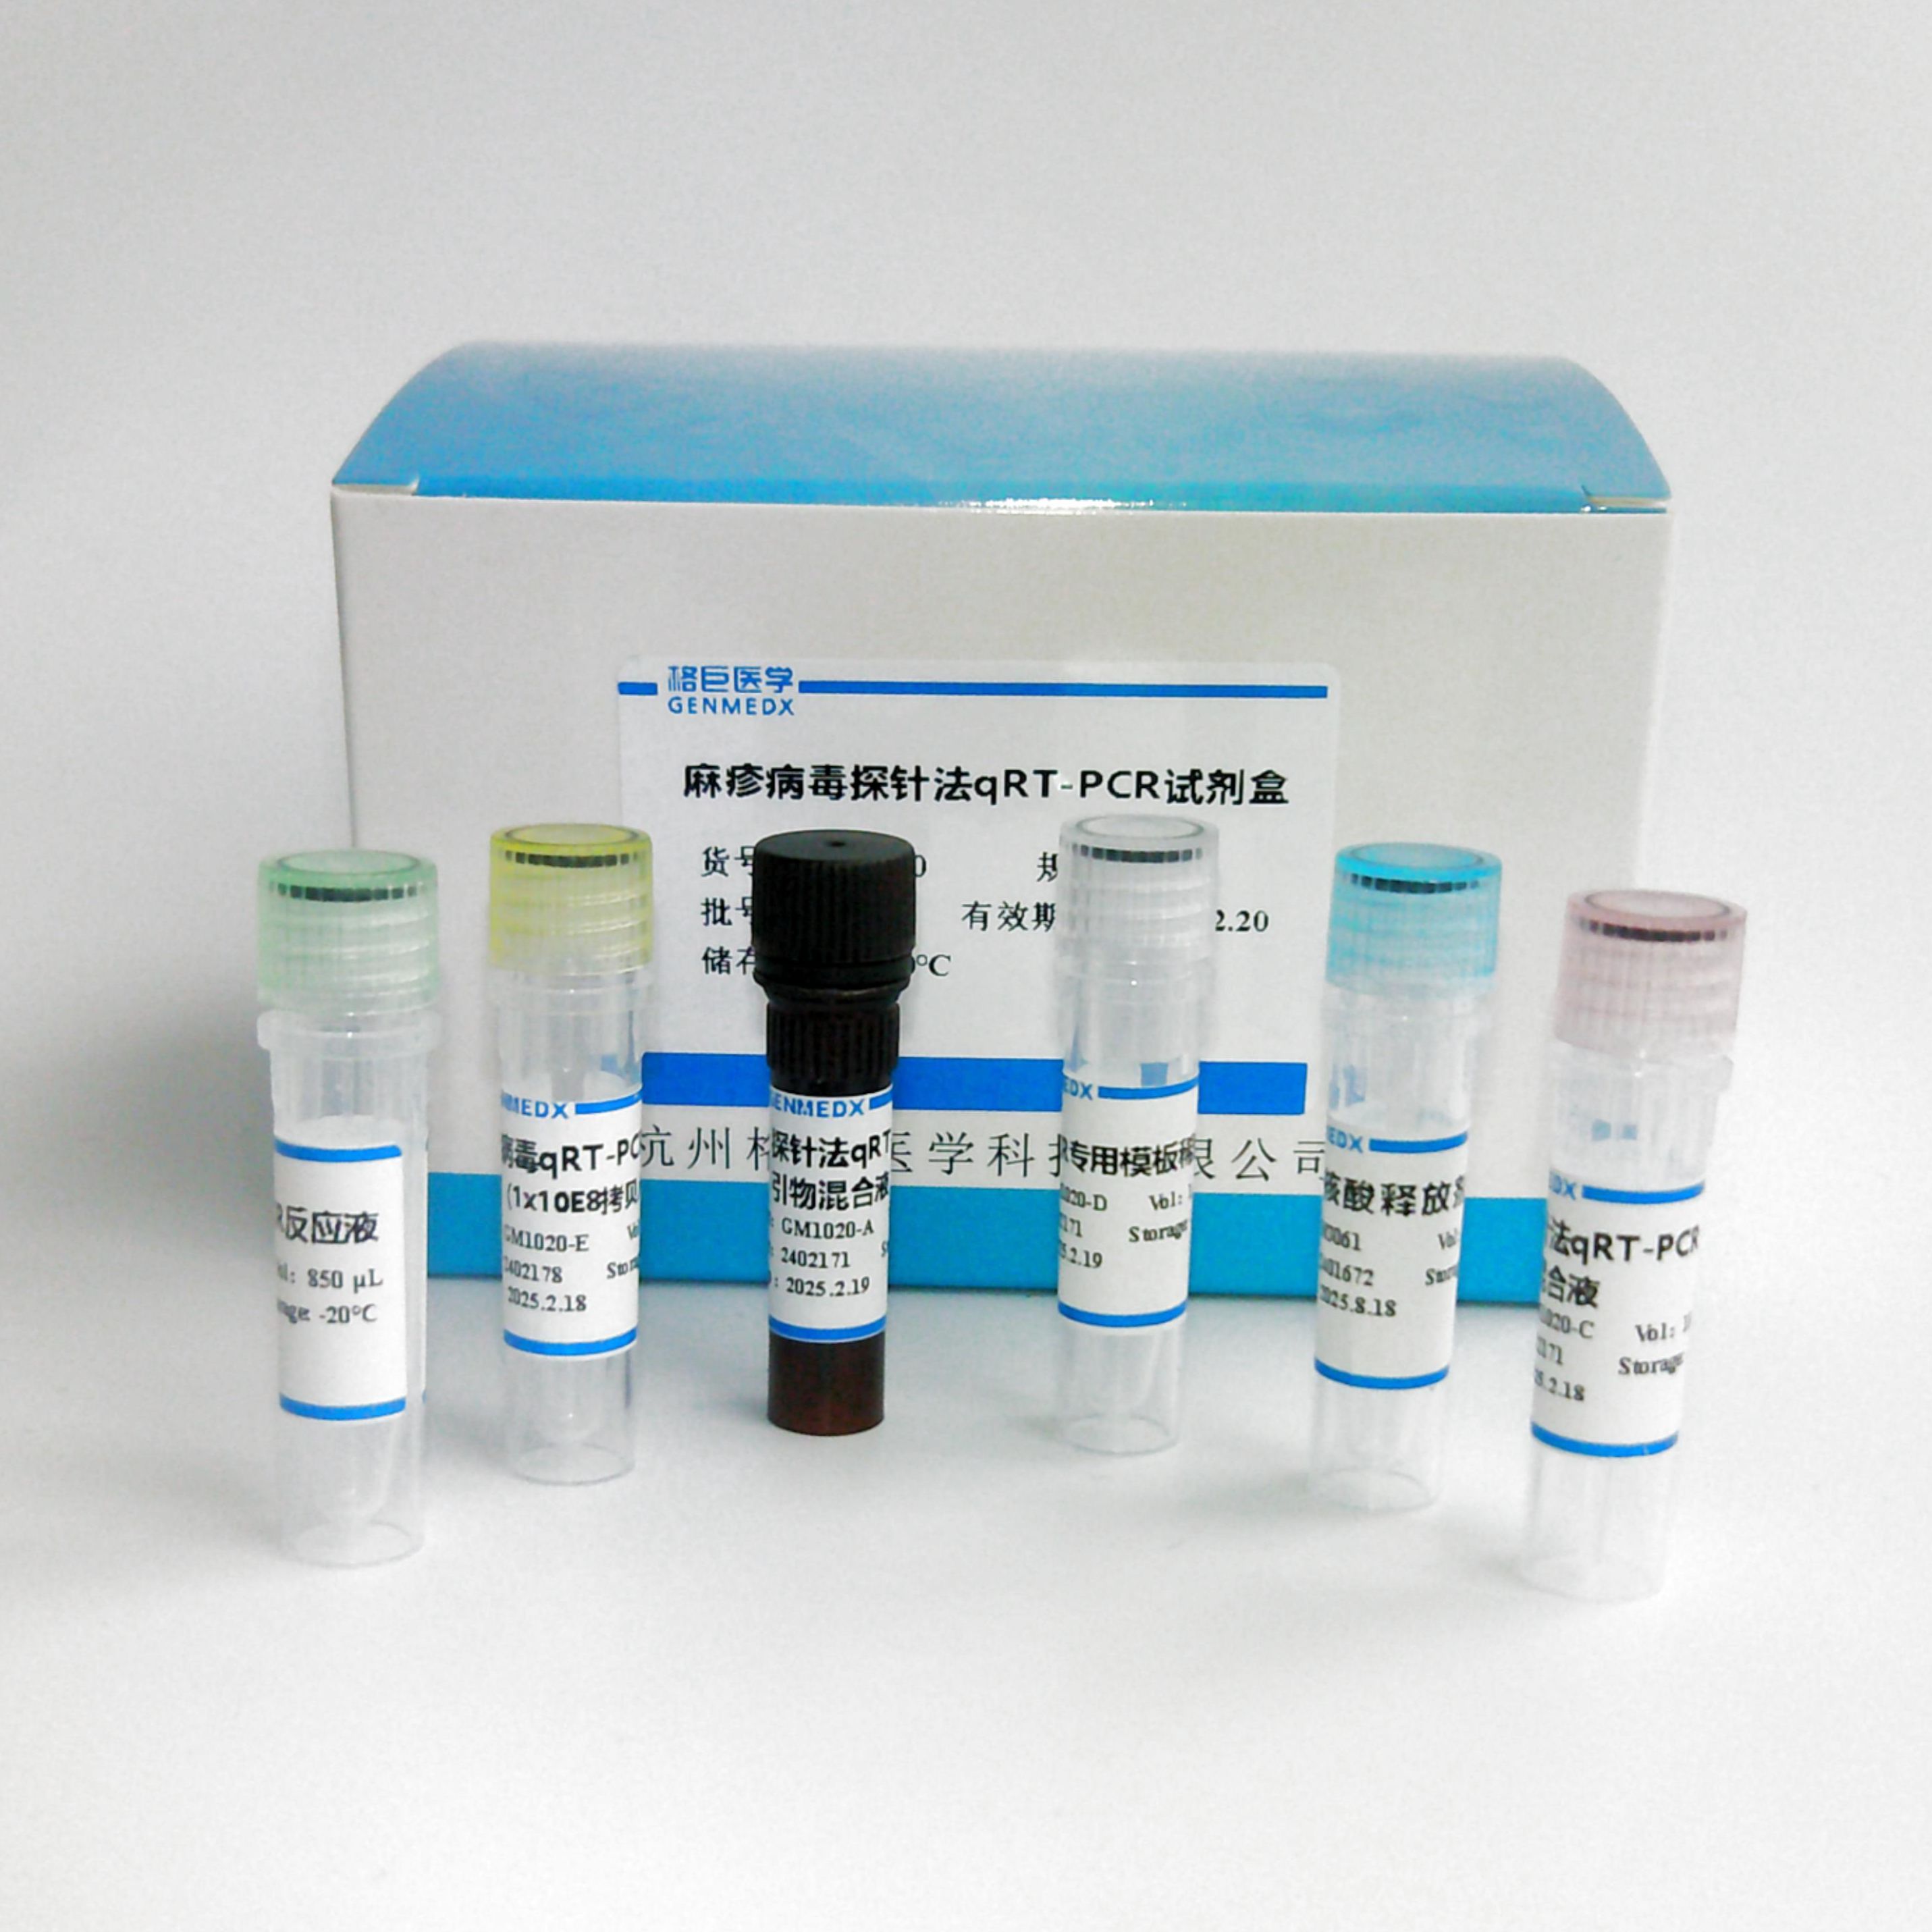 猫腹泻病原二联（猫冠状病毒、猫细小病毒）核酸检测试剂盒